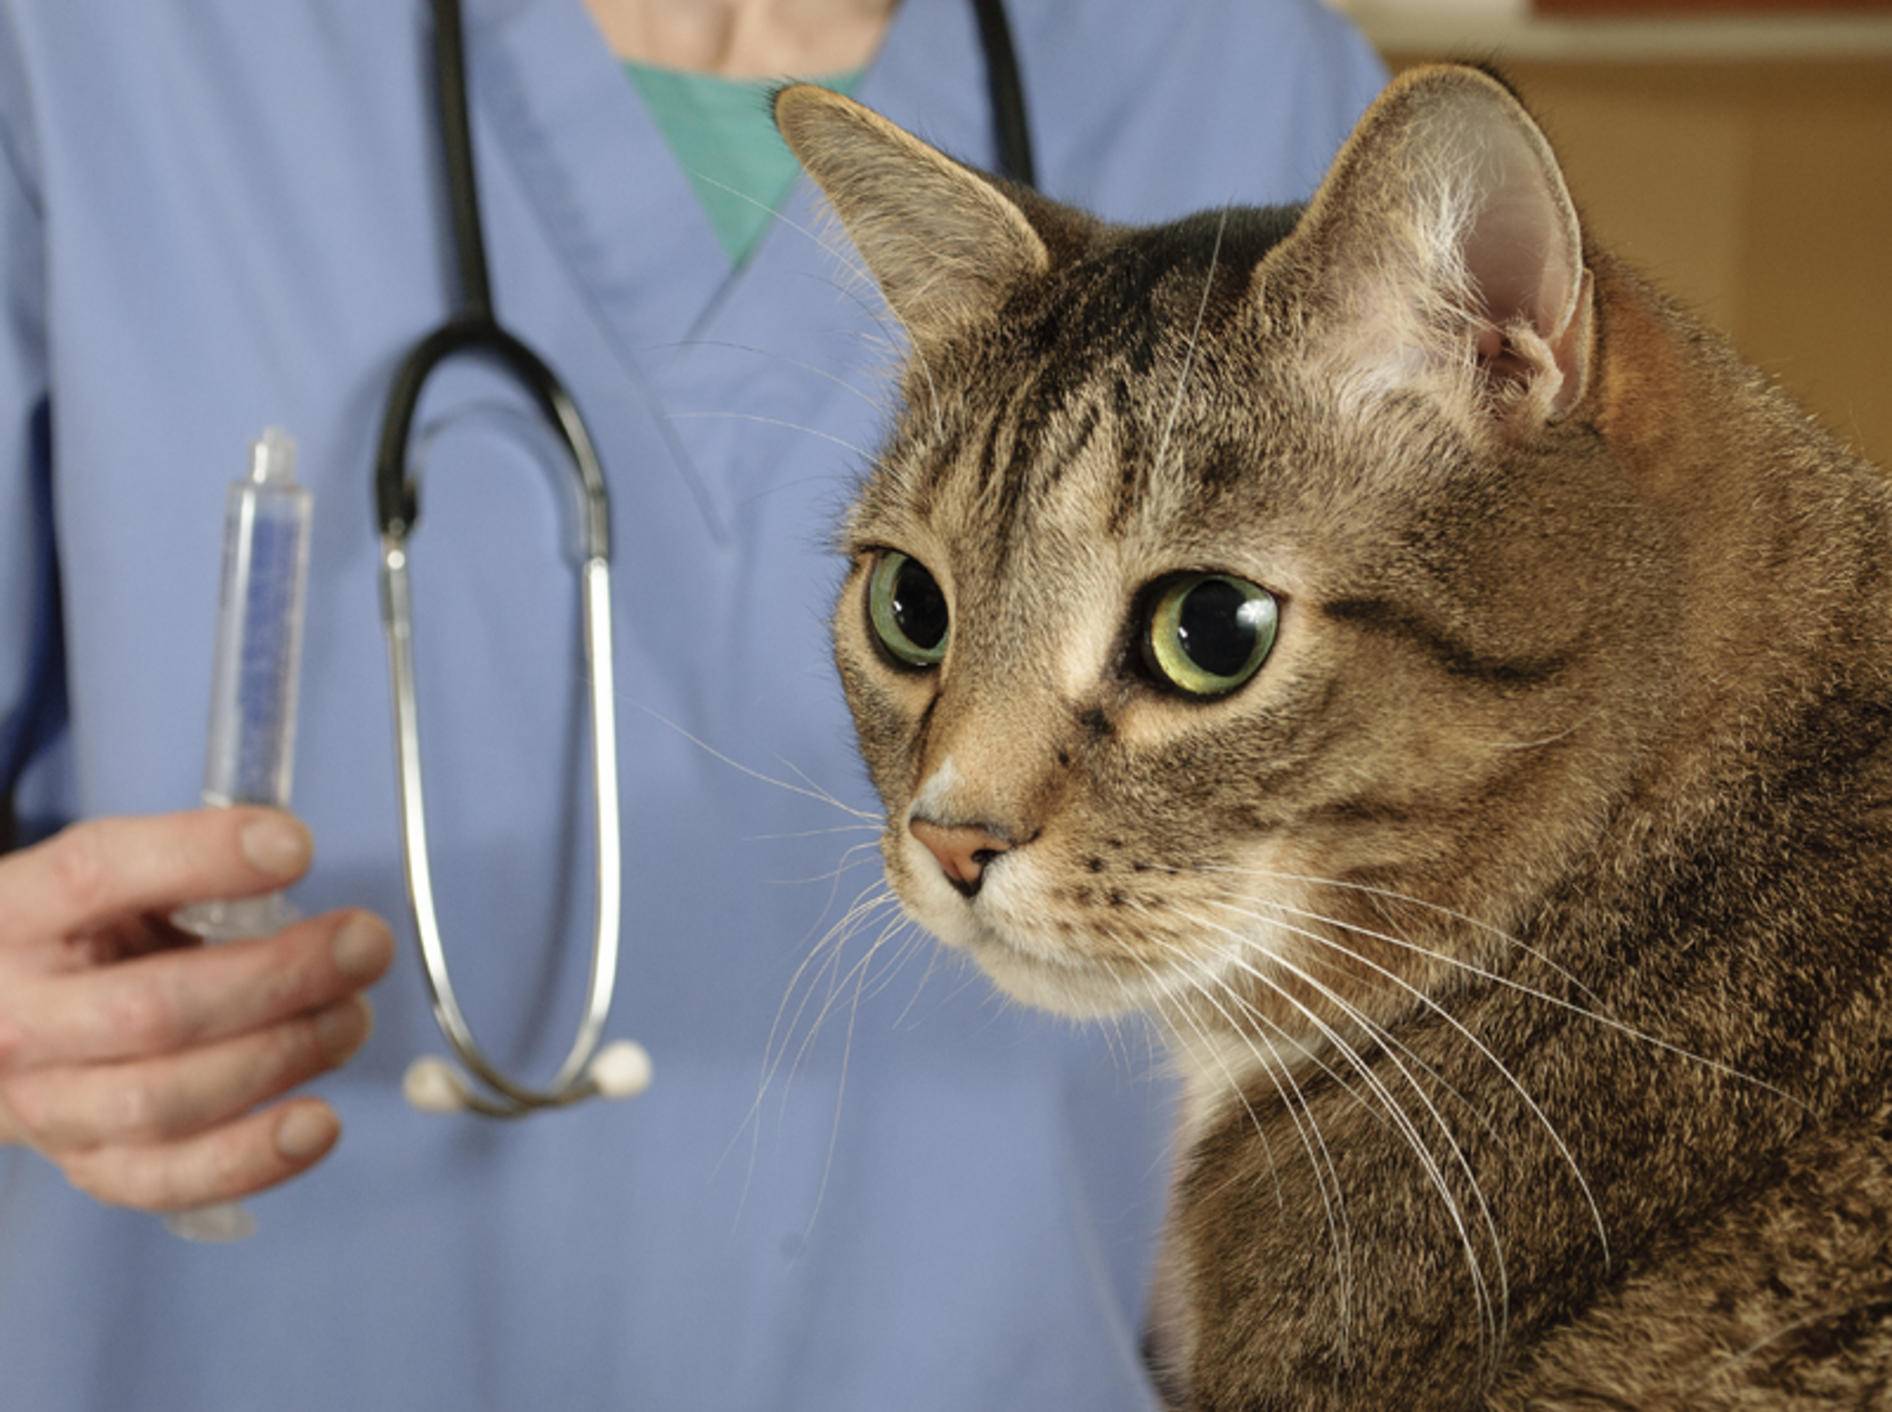 Bei einem Notfall muss die Katze sofort zum Tierarzt – Shutterstock / Mr. Nikon